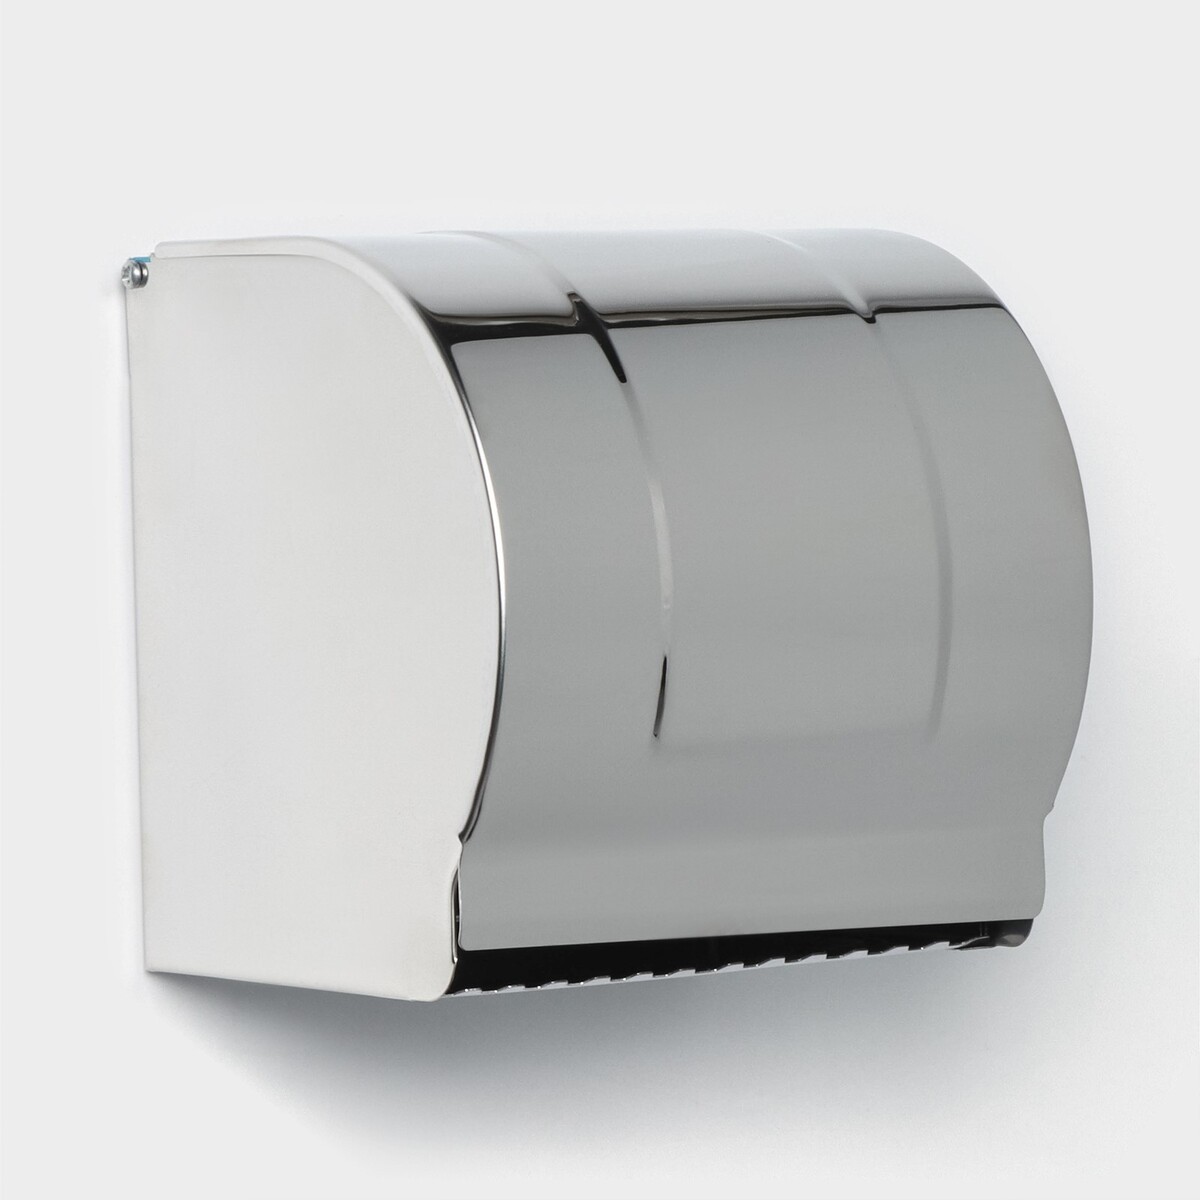 Держатель для туалетной бумаги, без втулки 12×12,5×12 см, цвет хром зеркальный держатель для туалетной бумаги отсек под дезодорант accoona a11005 1 хром